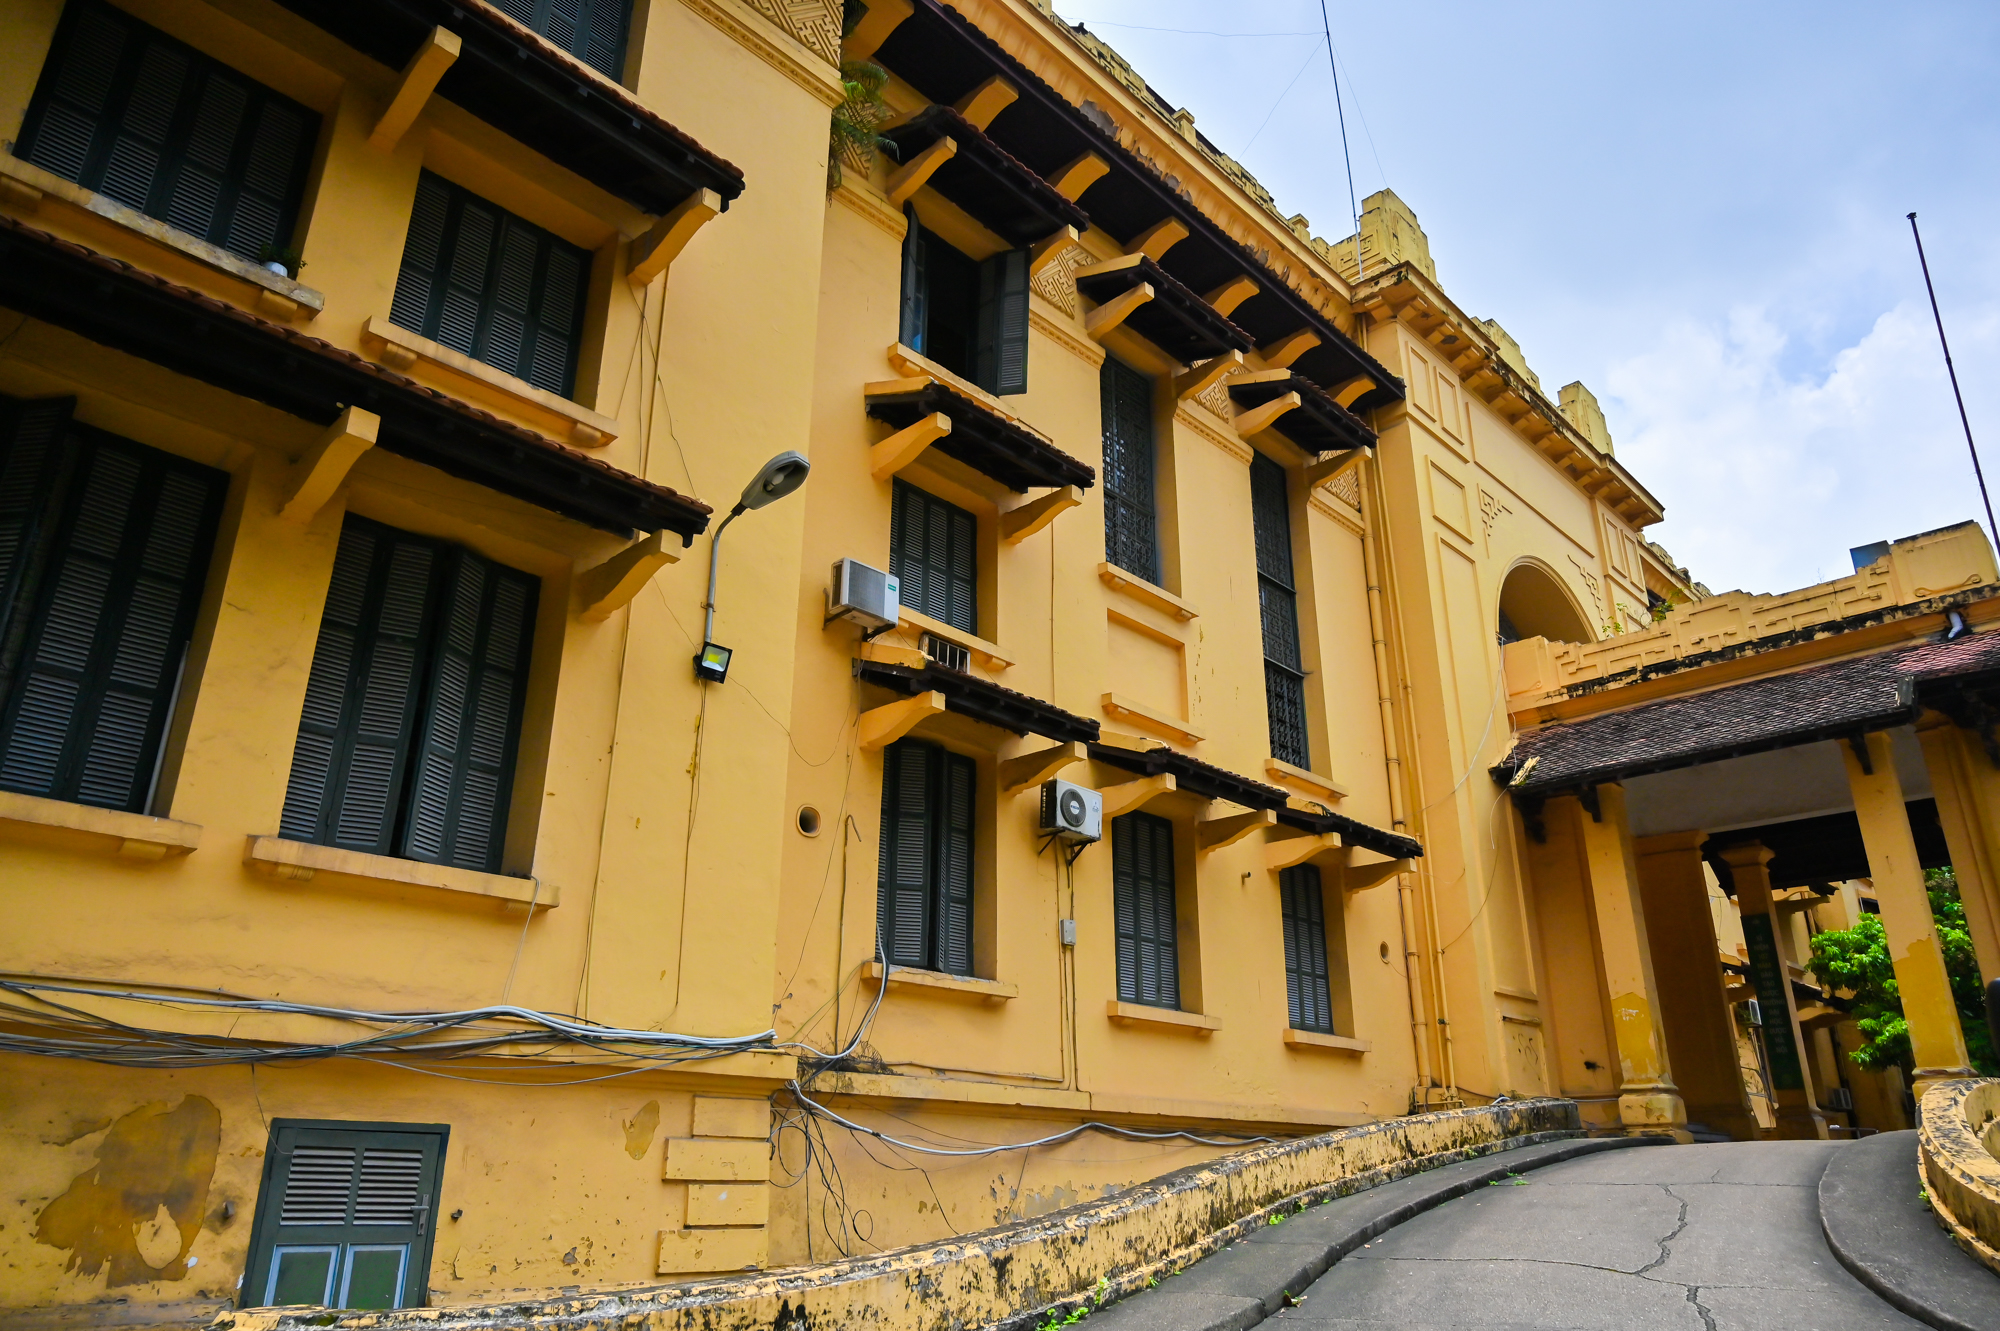 Trường đại học trăm tuổi, có hội trường đẹp như cung điện ở Hà Nội - Ảnh 8.